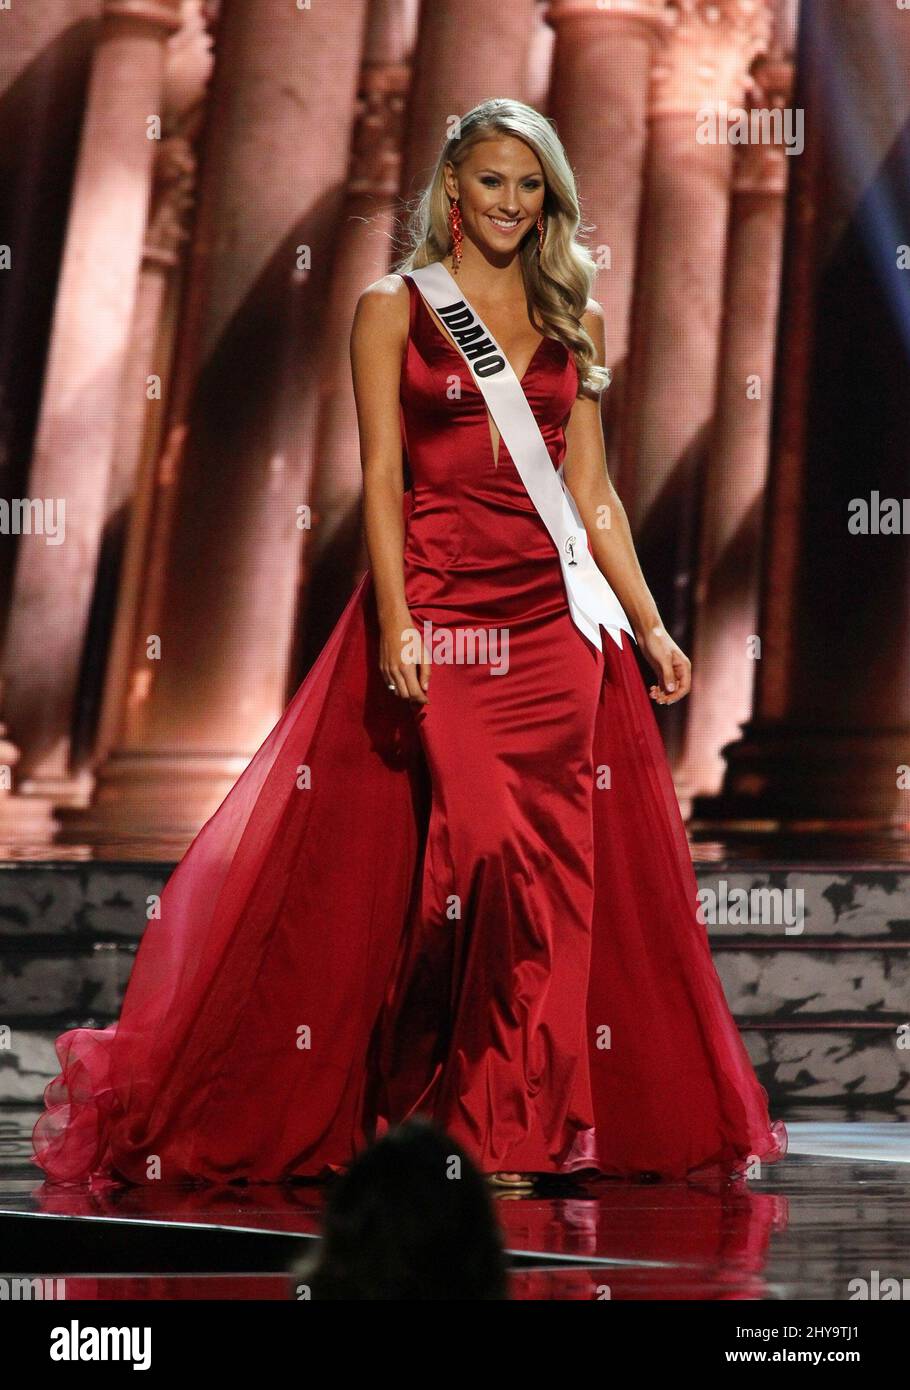 Miss Idaho USA, Sydney Halper auf der Bühne während des Miss USA Pageant Preliminary Competition 2016, T-Mobile Arena, Las Vegas, NV, am 1. Juni, 2016. Stockfoto